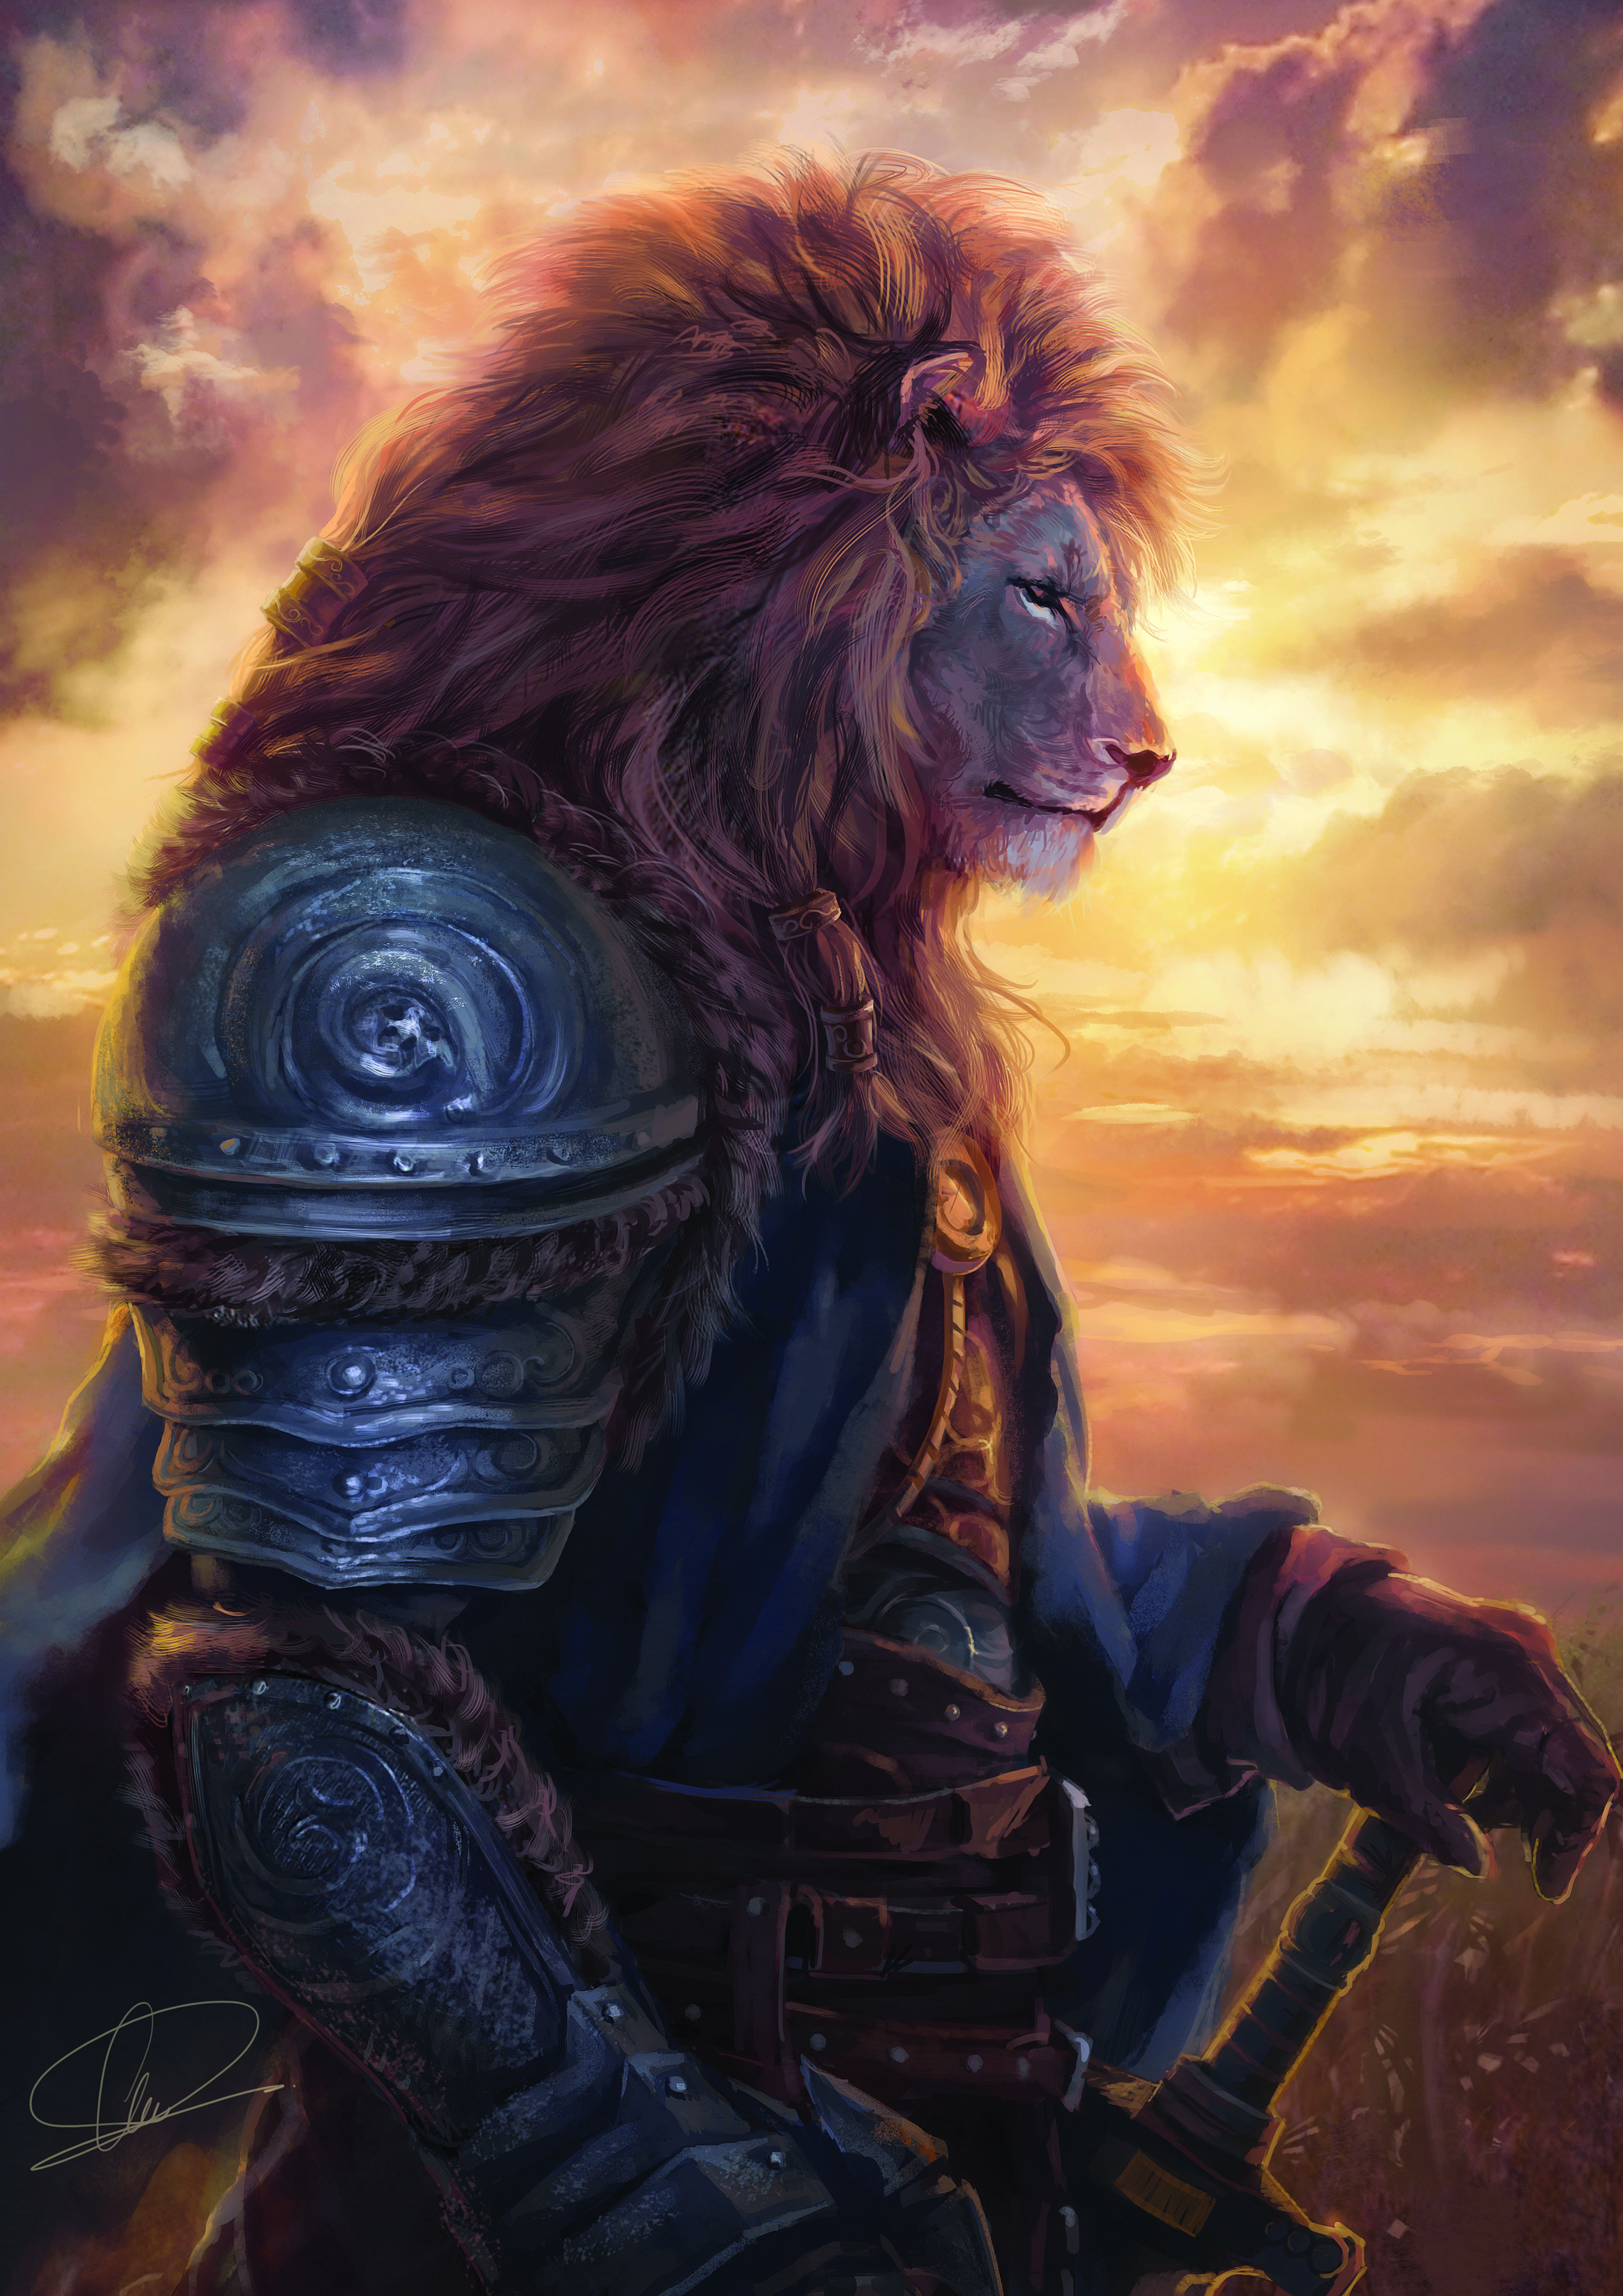 LionKing_edwardchee - Animal Warrior Illustration Contest